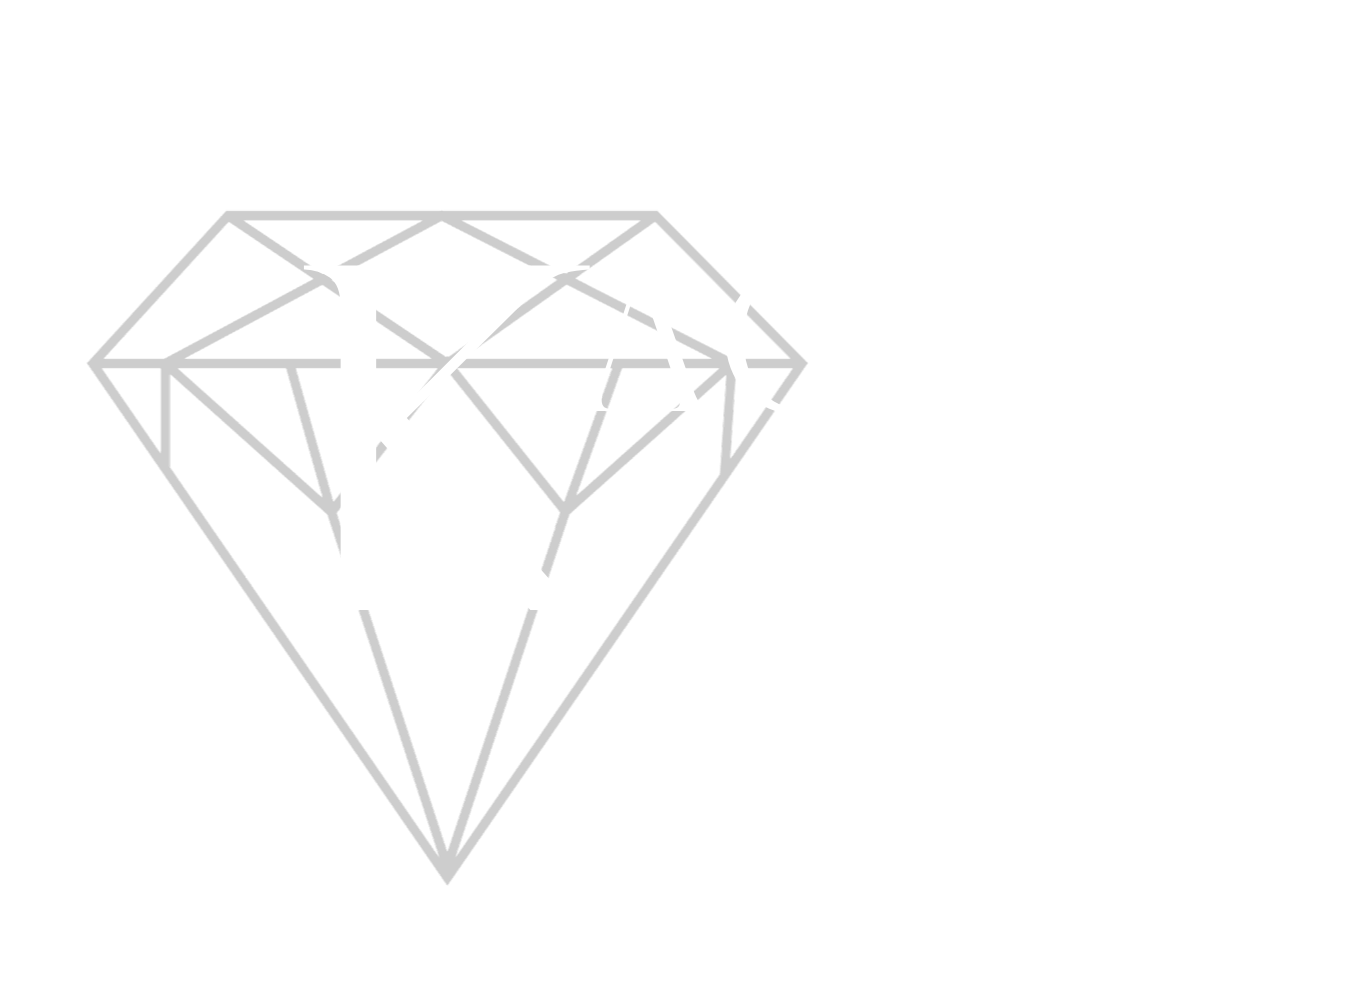 Kacher Fine Jewelry